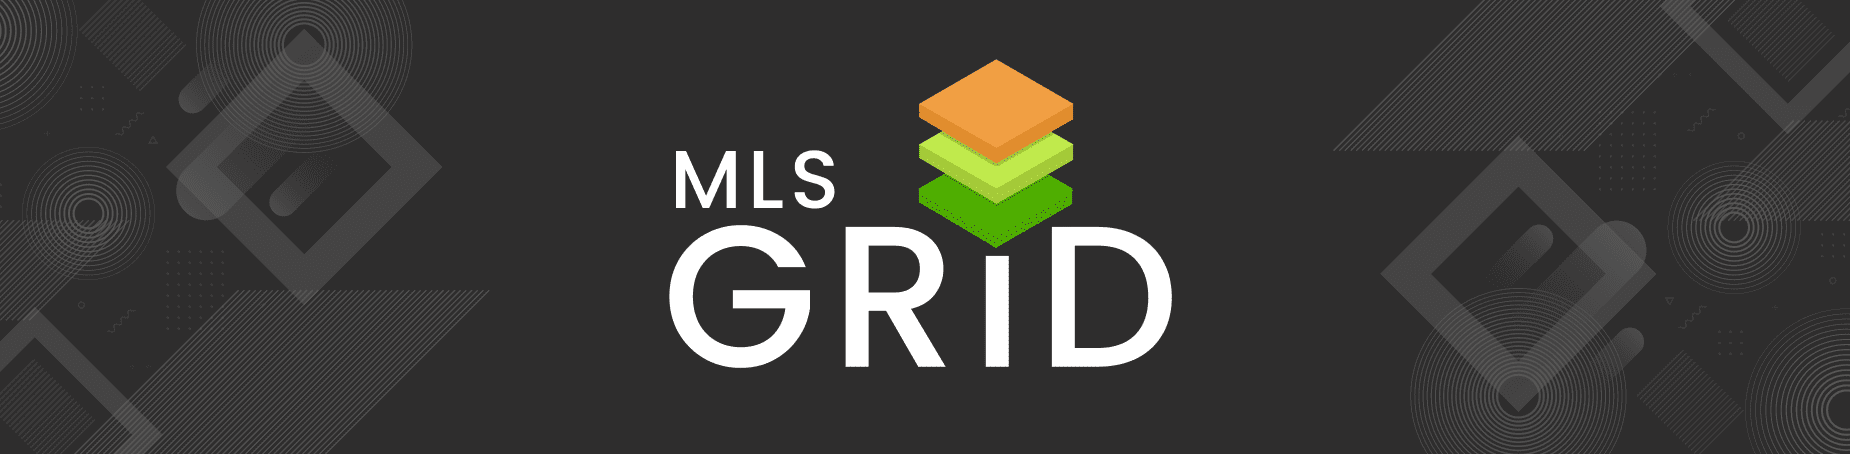 mls grid